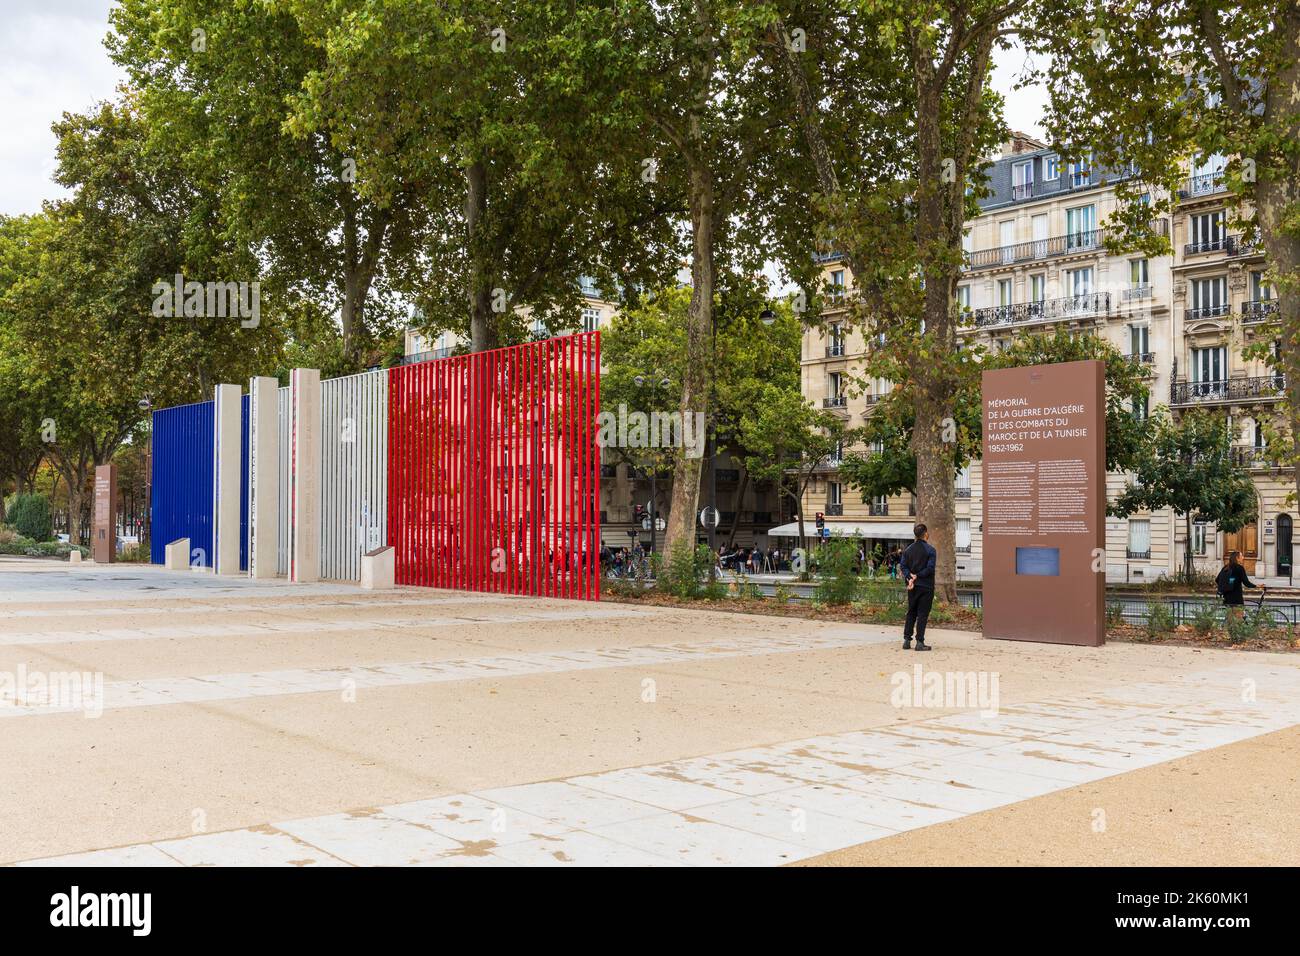 Mémorial national de la guerre d'Algérie et des conflits au Maroc et en Tunisie. 7th arrondissement, Paris, France, Europe Banque D'Images